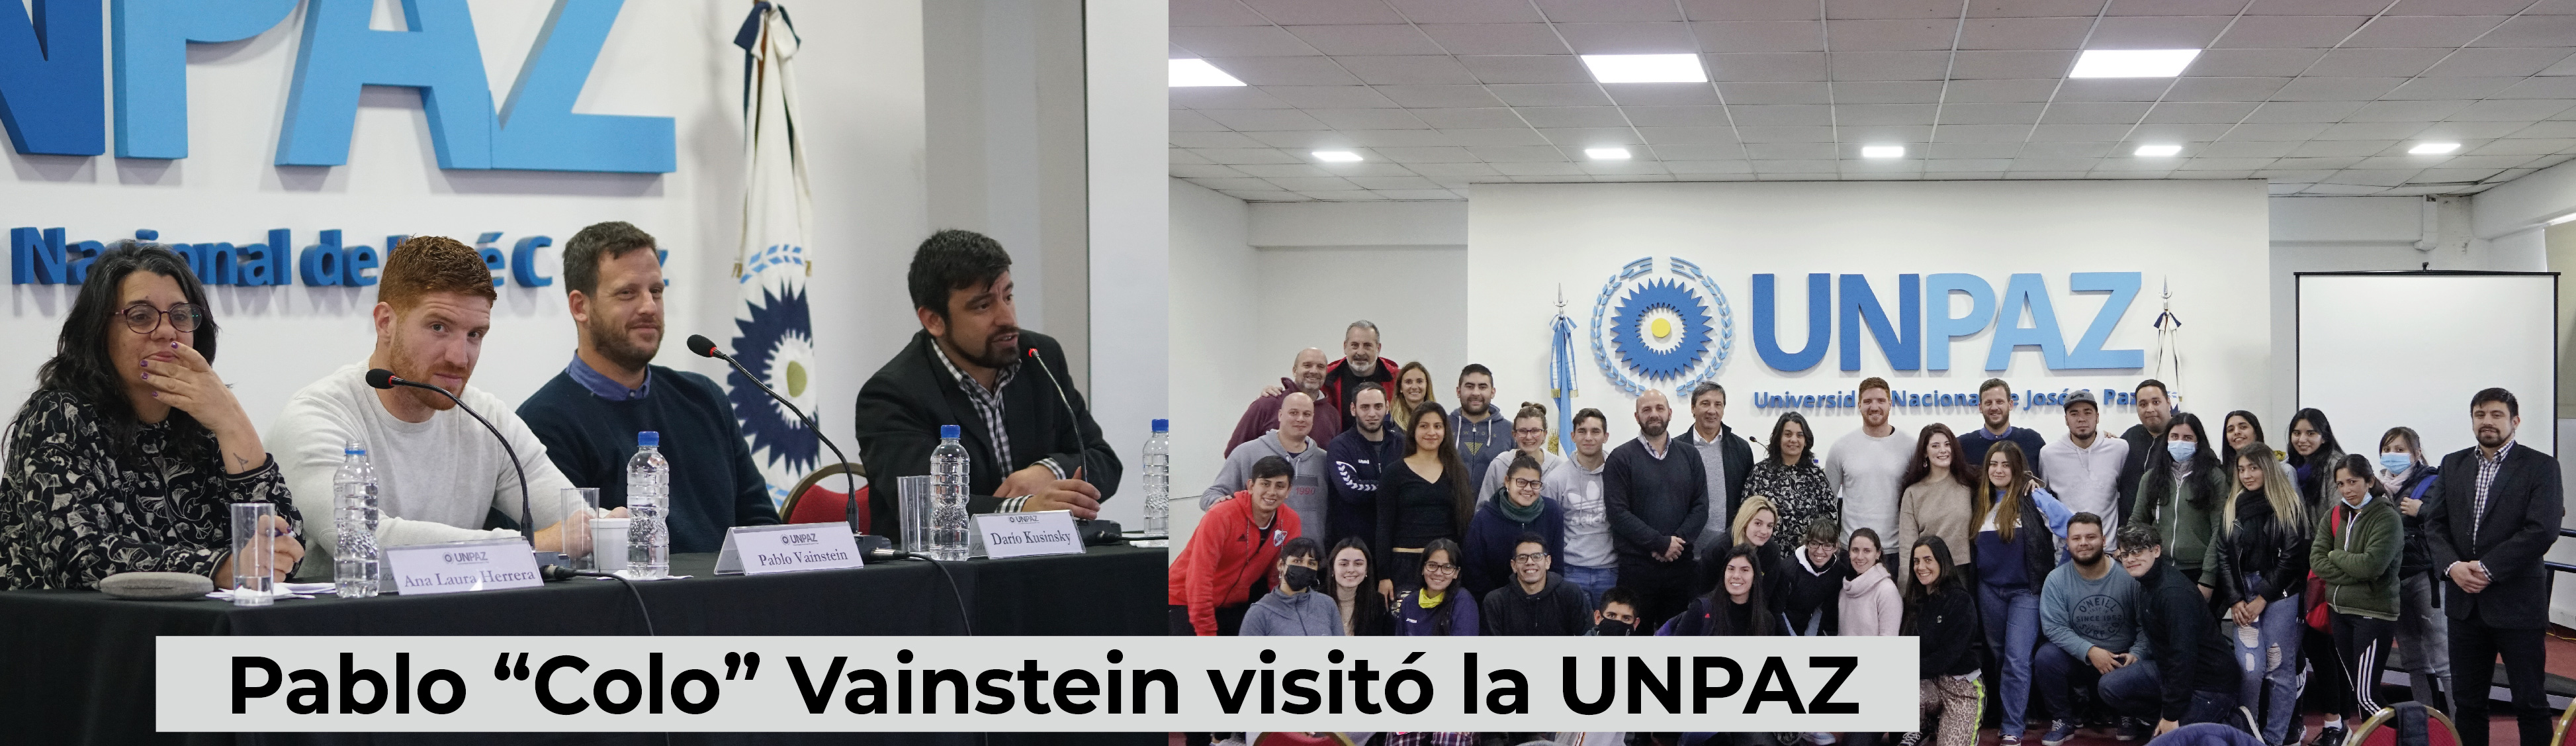 Pablo “Colo” Vainstein visitó la UNPAZ y compartió experiencias con la comunidad universitaria